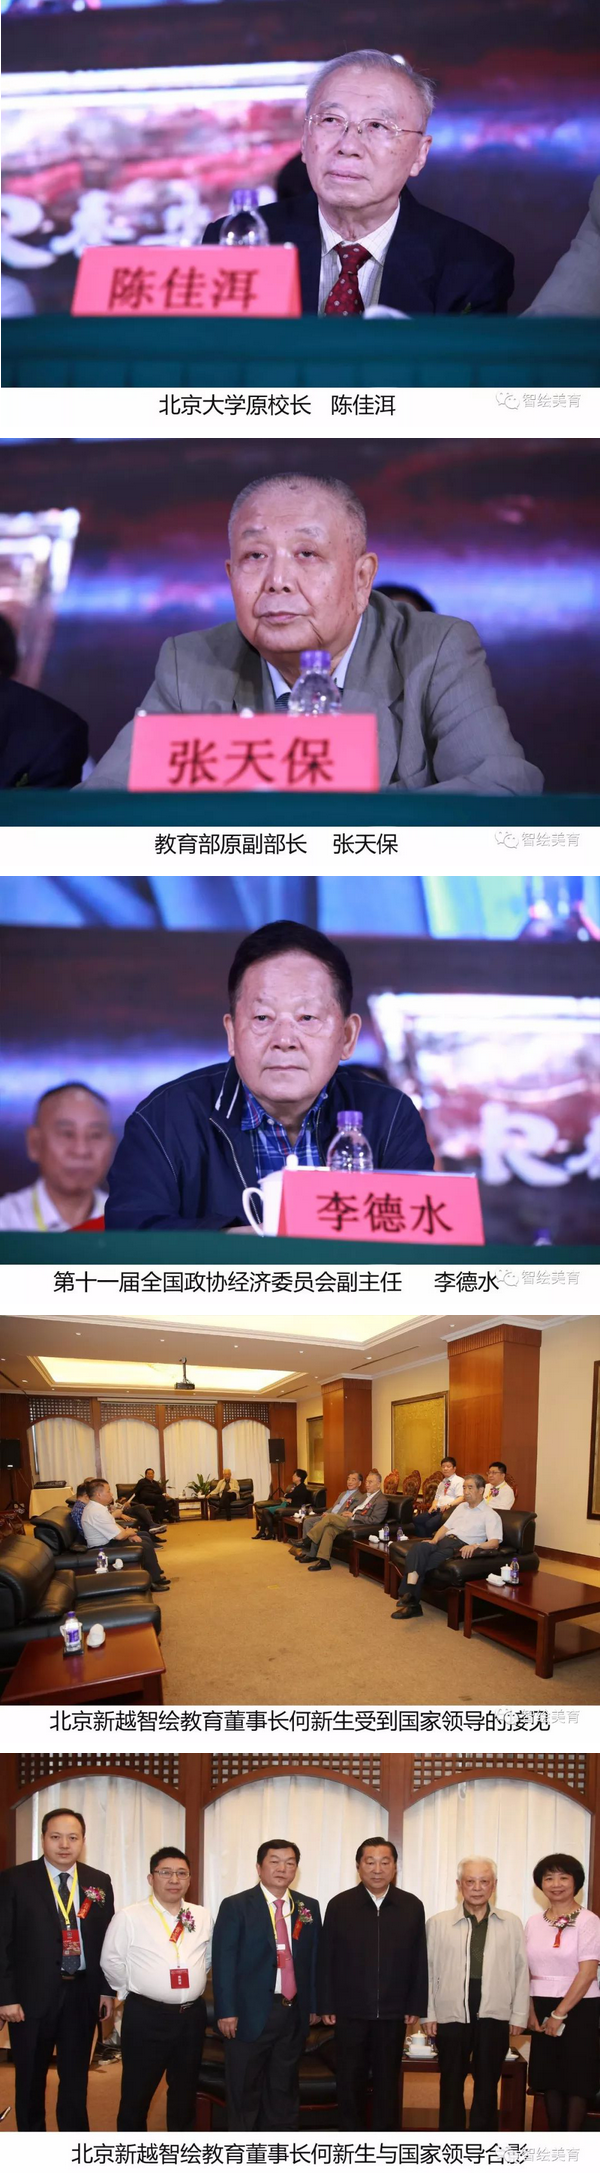 2018中国民办教育领袖峰会揭晓 新越智绘获奖